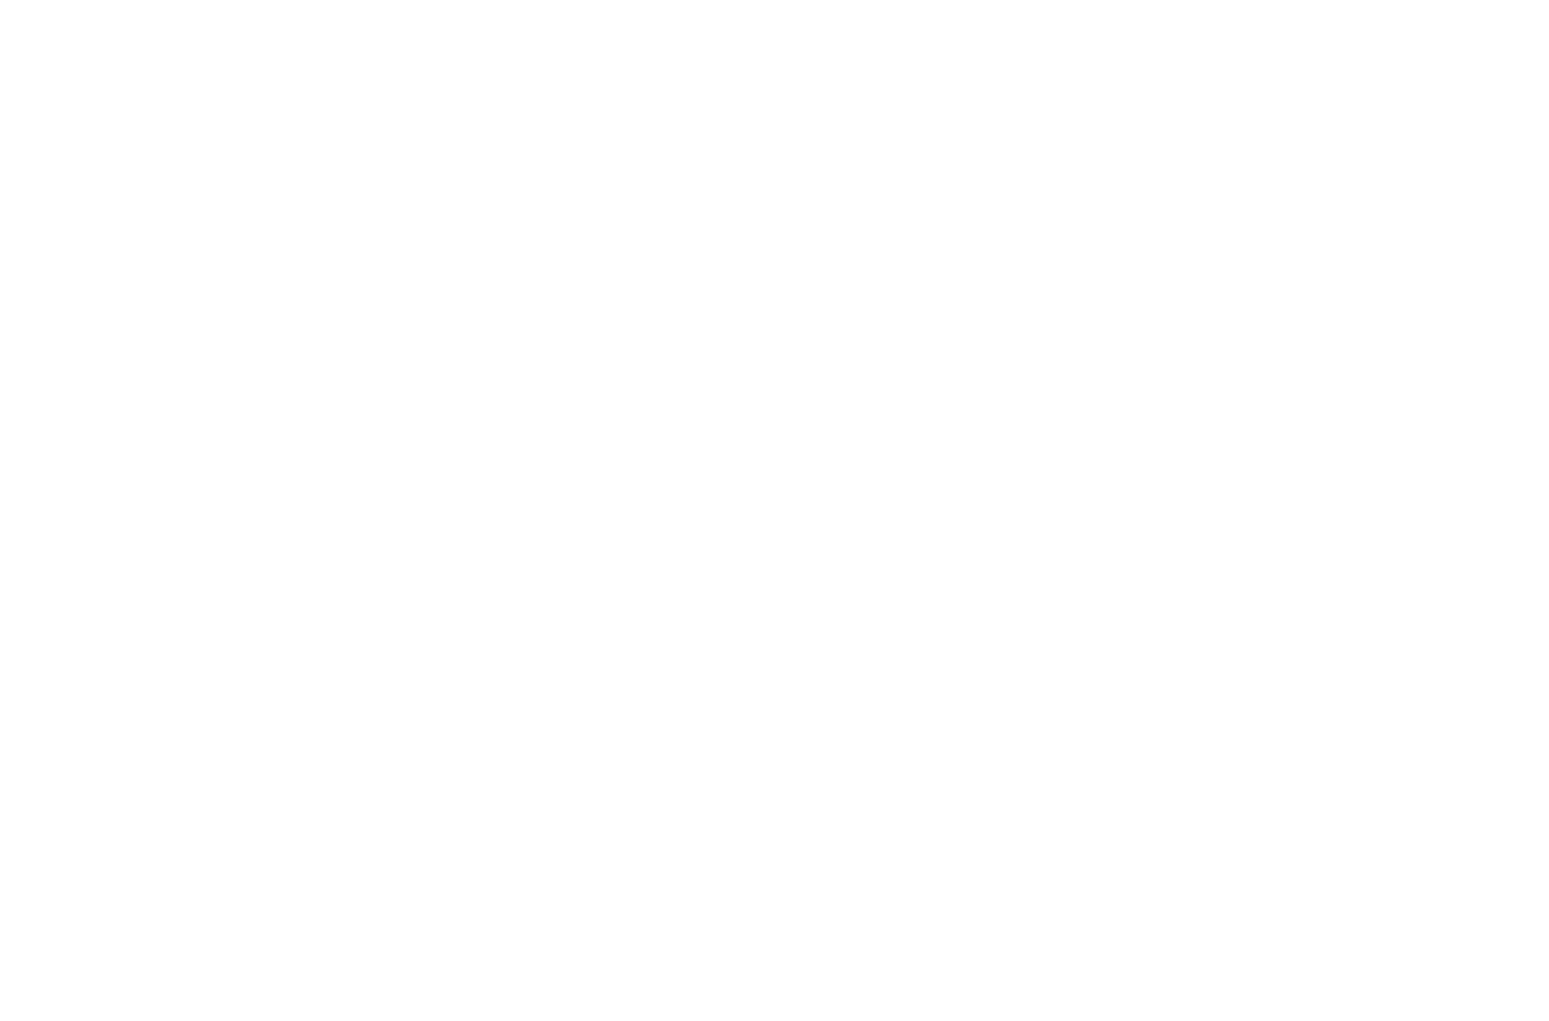 BU Law Review